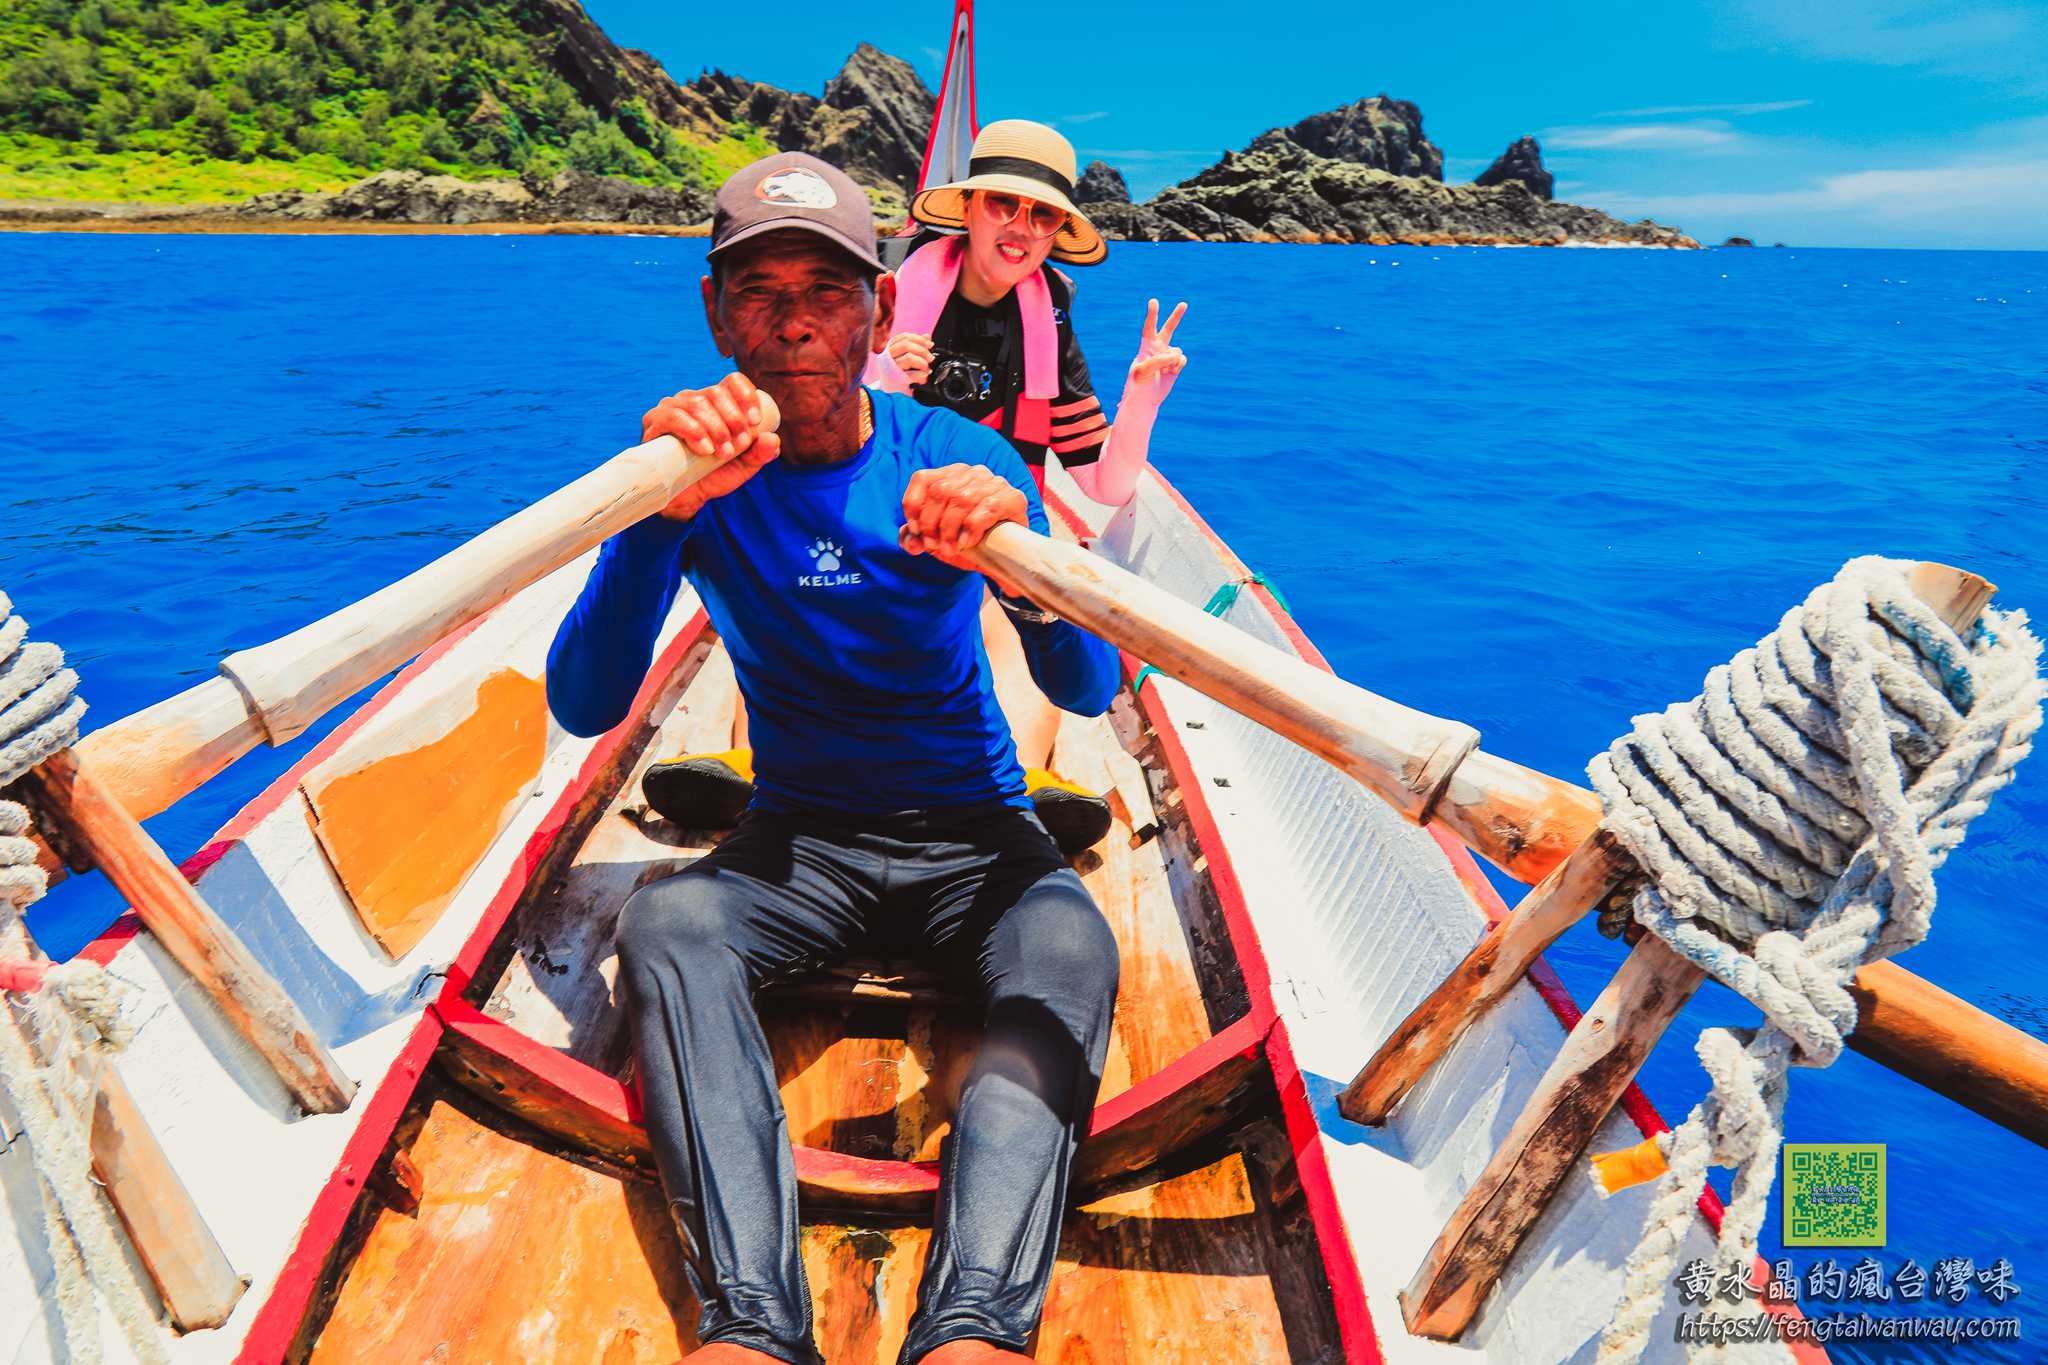 蘭嶼四天三夜環島旅遊懶人包【蘭嶼旅遊】|蘭嶼往返交通、住宿、美食、景點、玩水浮潛總整理